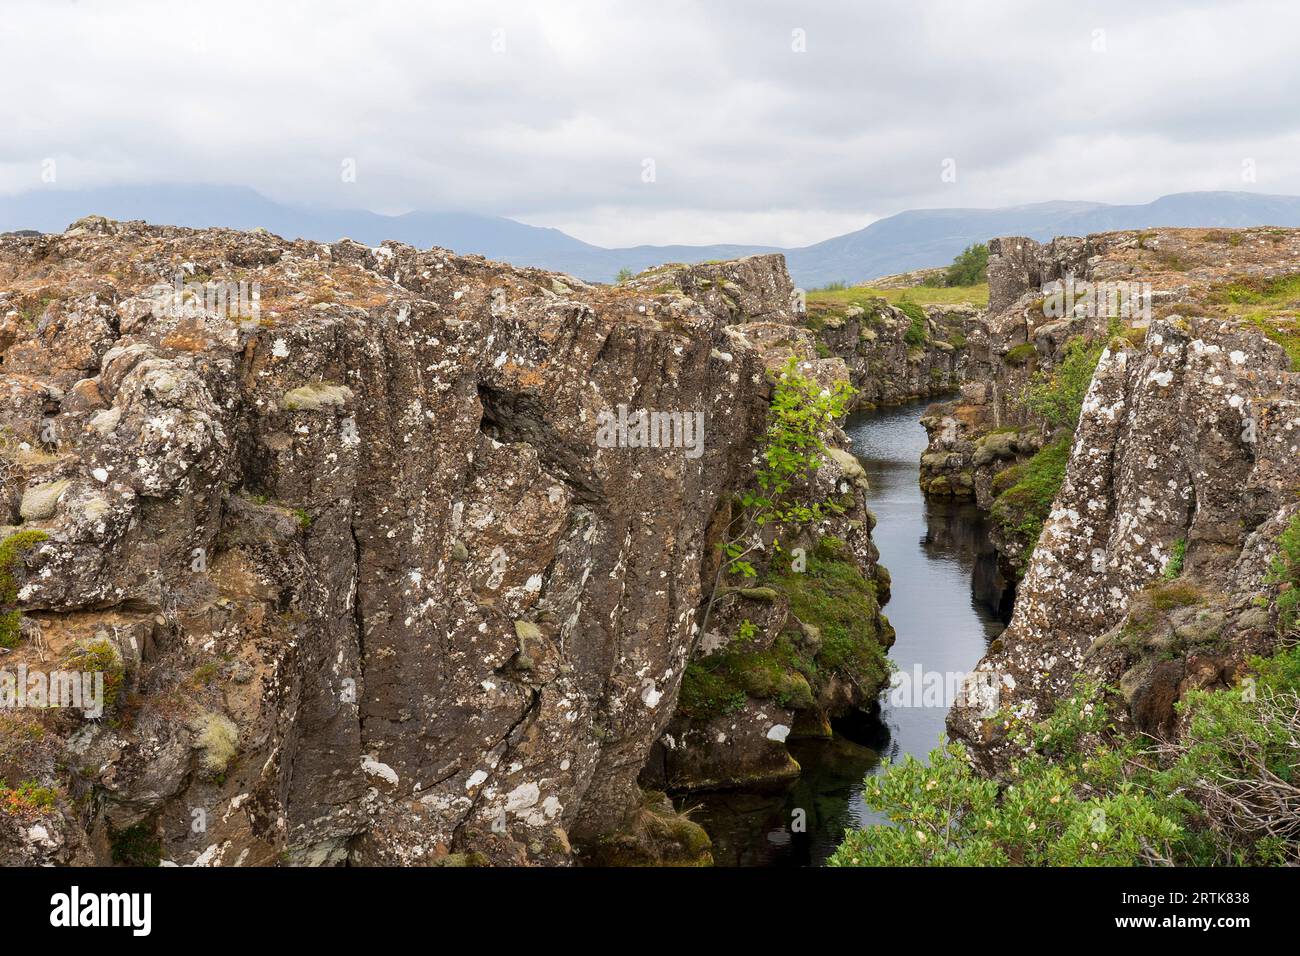 Parc national de Thingvellir Iceland Continental Divide - dérive tectonique entre la plaque nord-américaine et la plaque eurasienne. Þingvellir - Islande. Banque D'Images